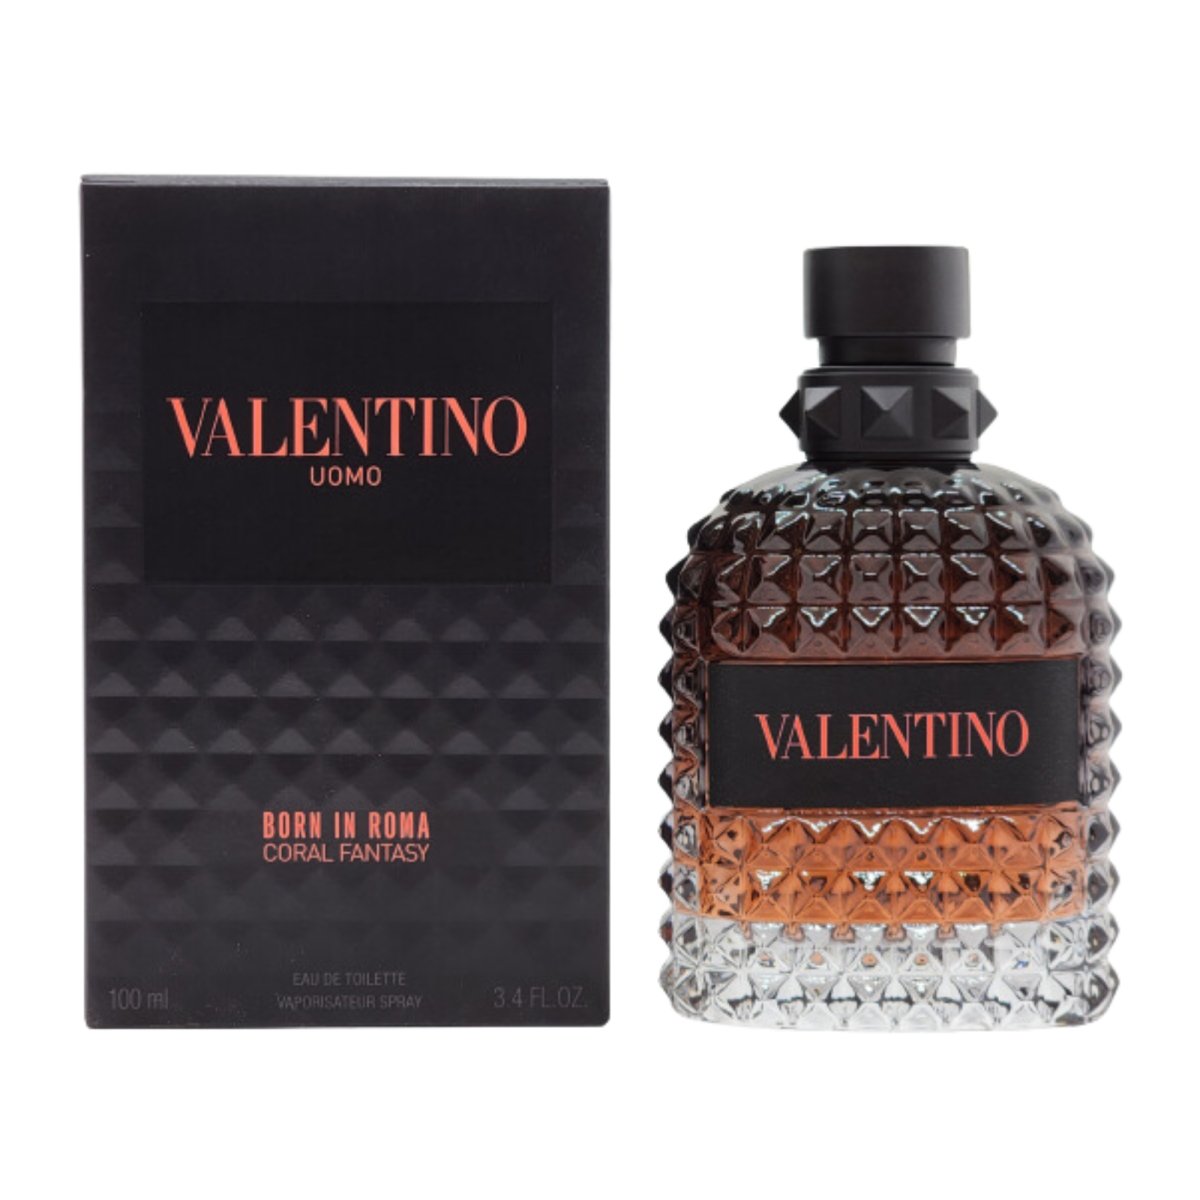 Valentino Uomo Born in Roma Coral Fantasy 100ml / 3.4 oz EDT Fast by Finescents - Valentino - Fragrance